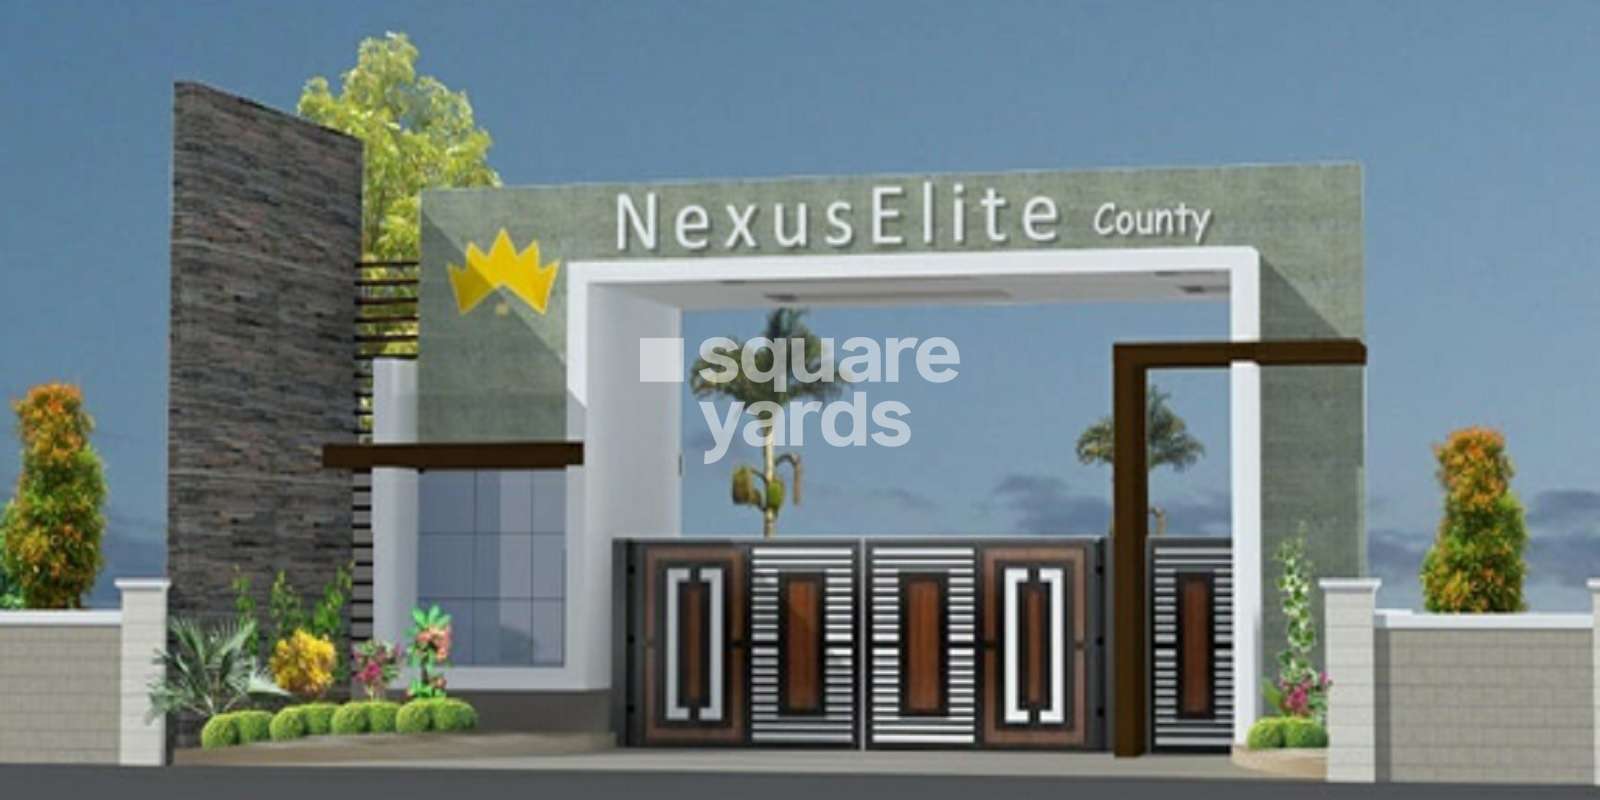 Nexus Elite County Cover Image